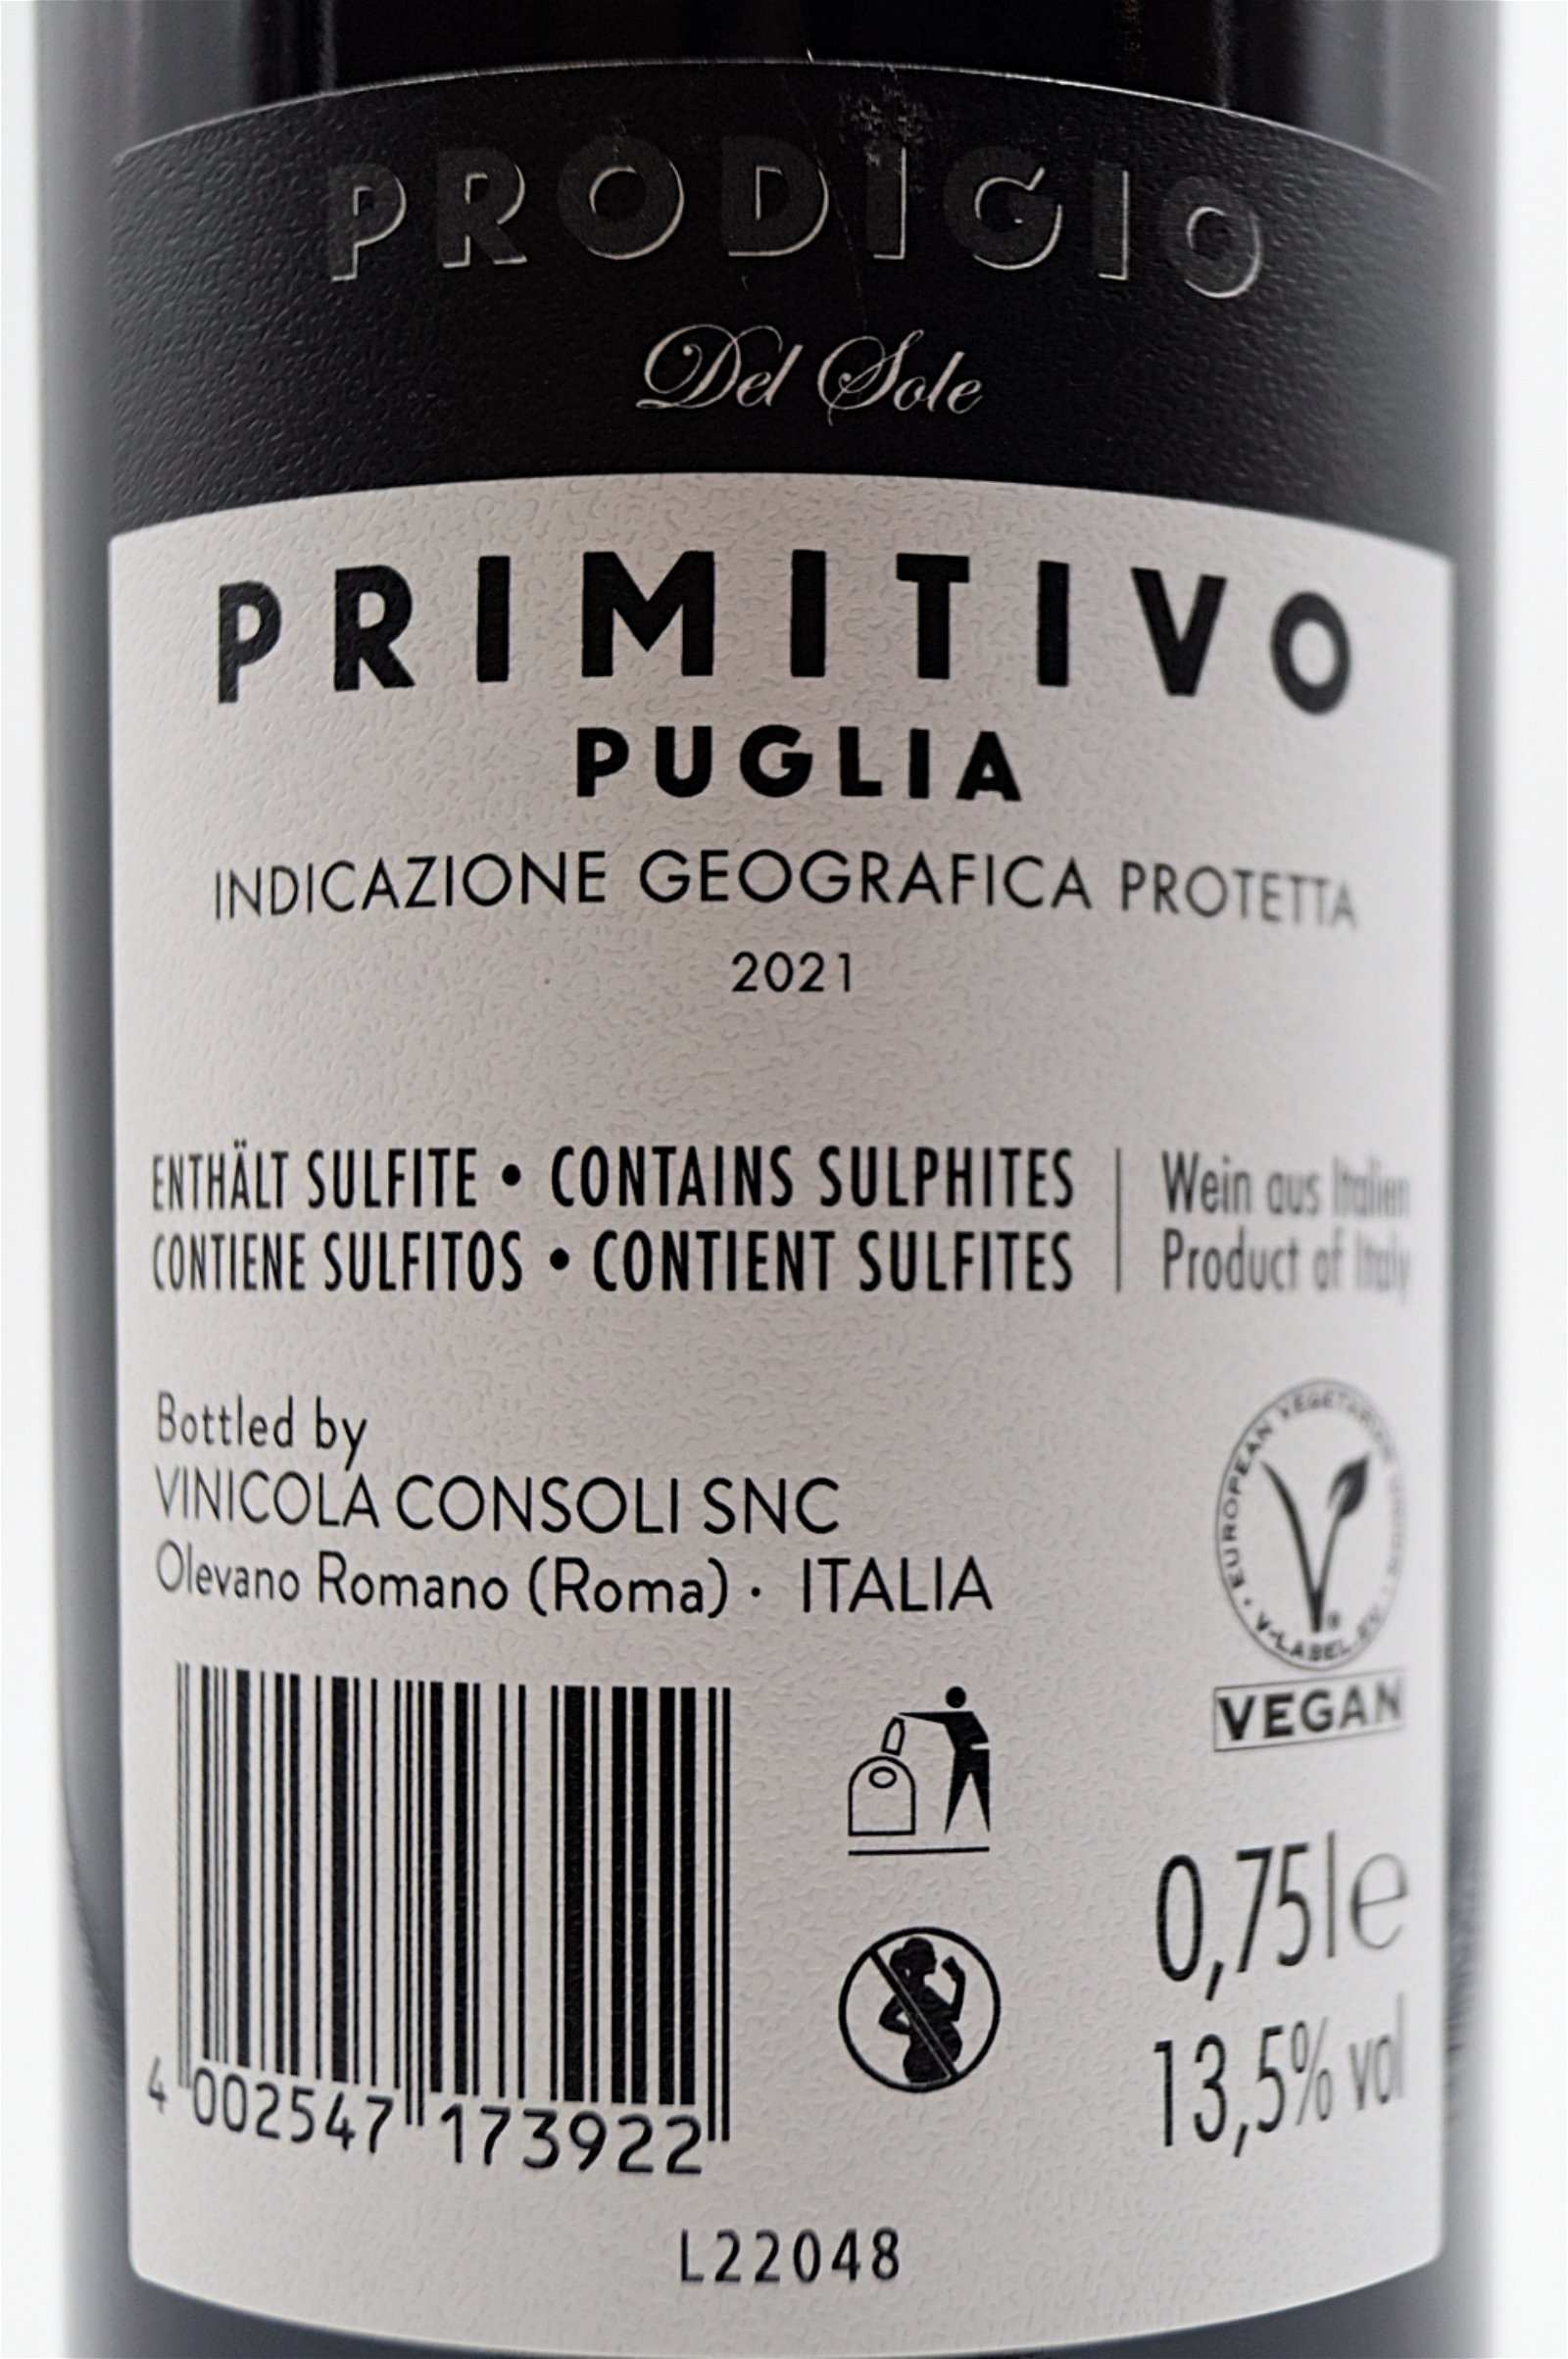 Latentia Winery Primitivo del Sole Prodigio Puglia 2021